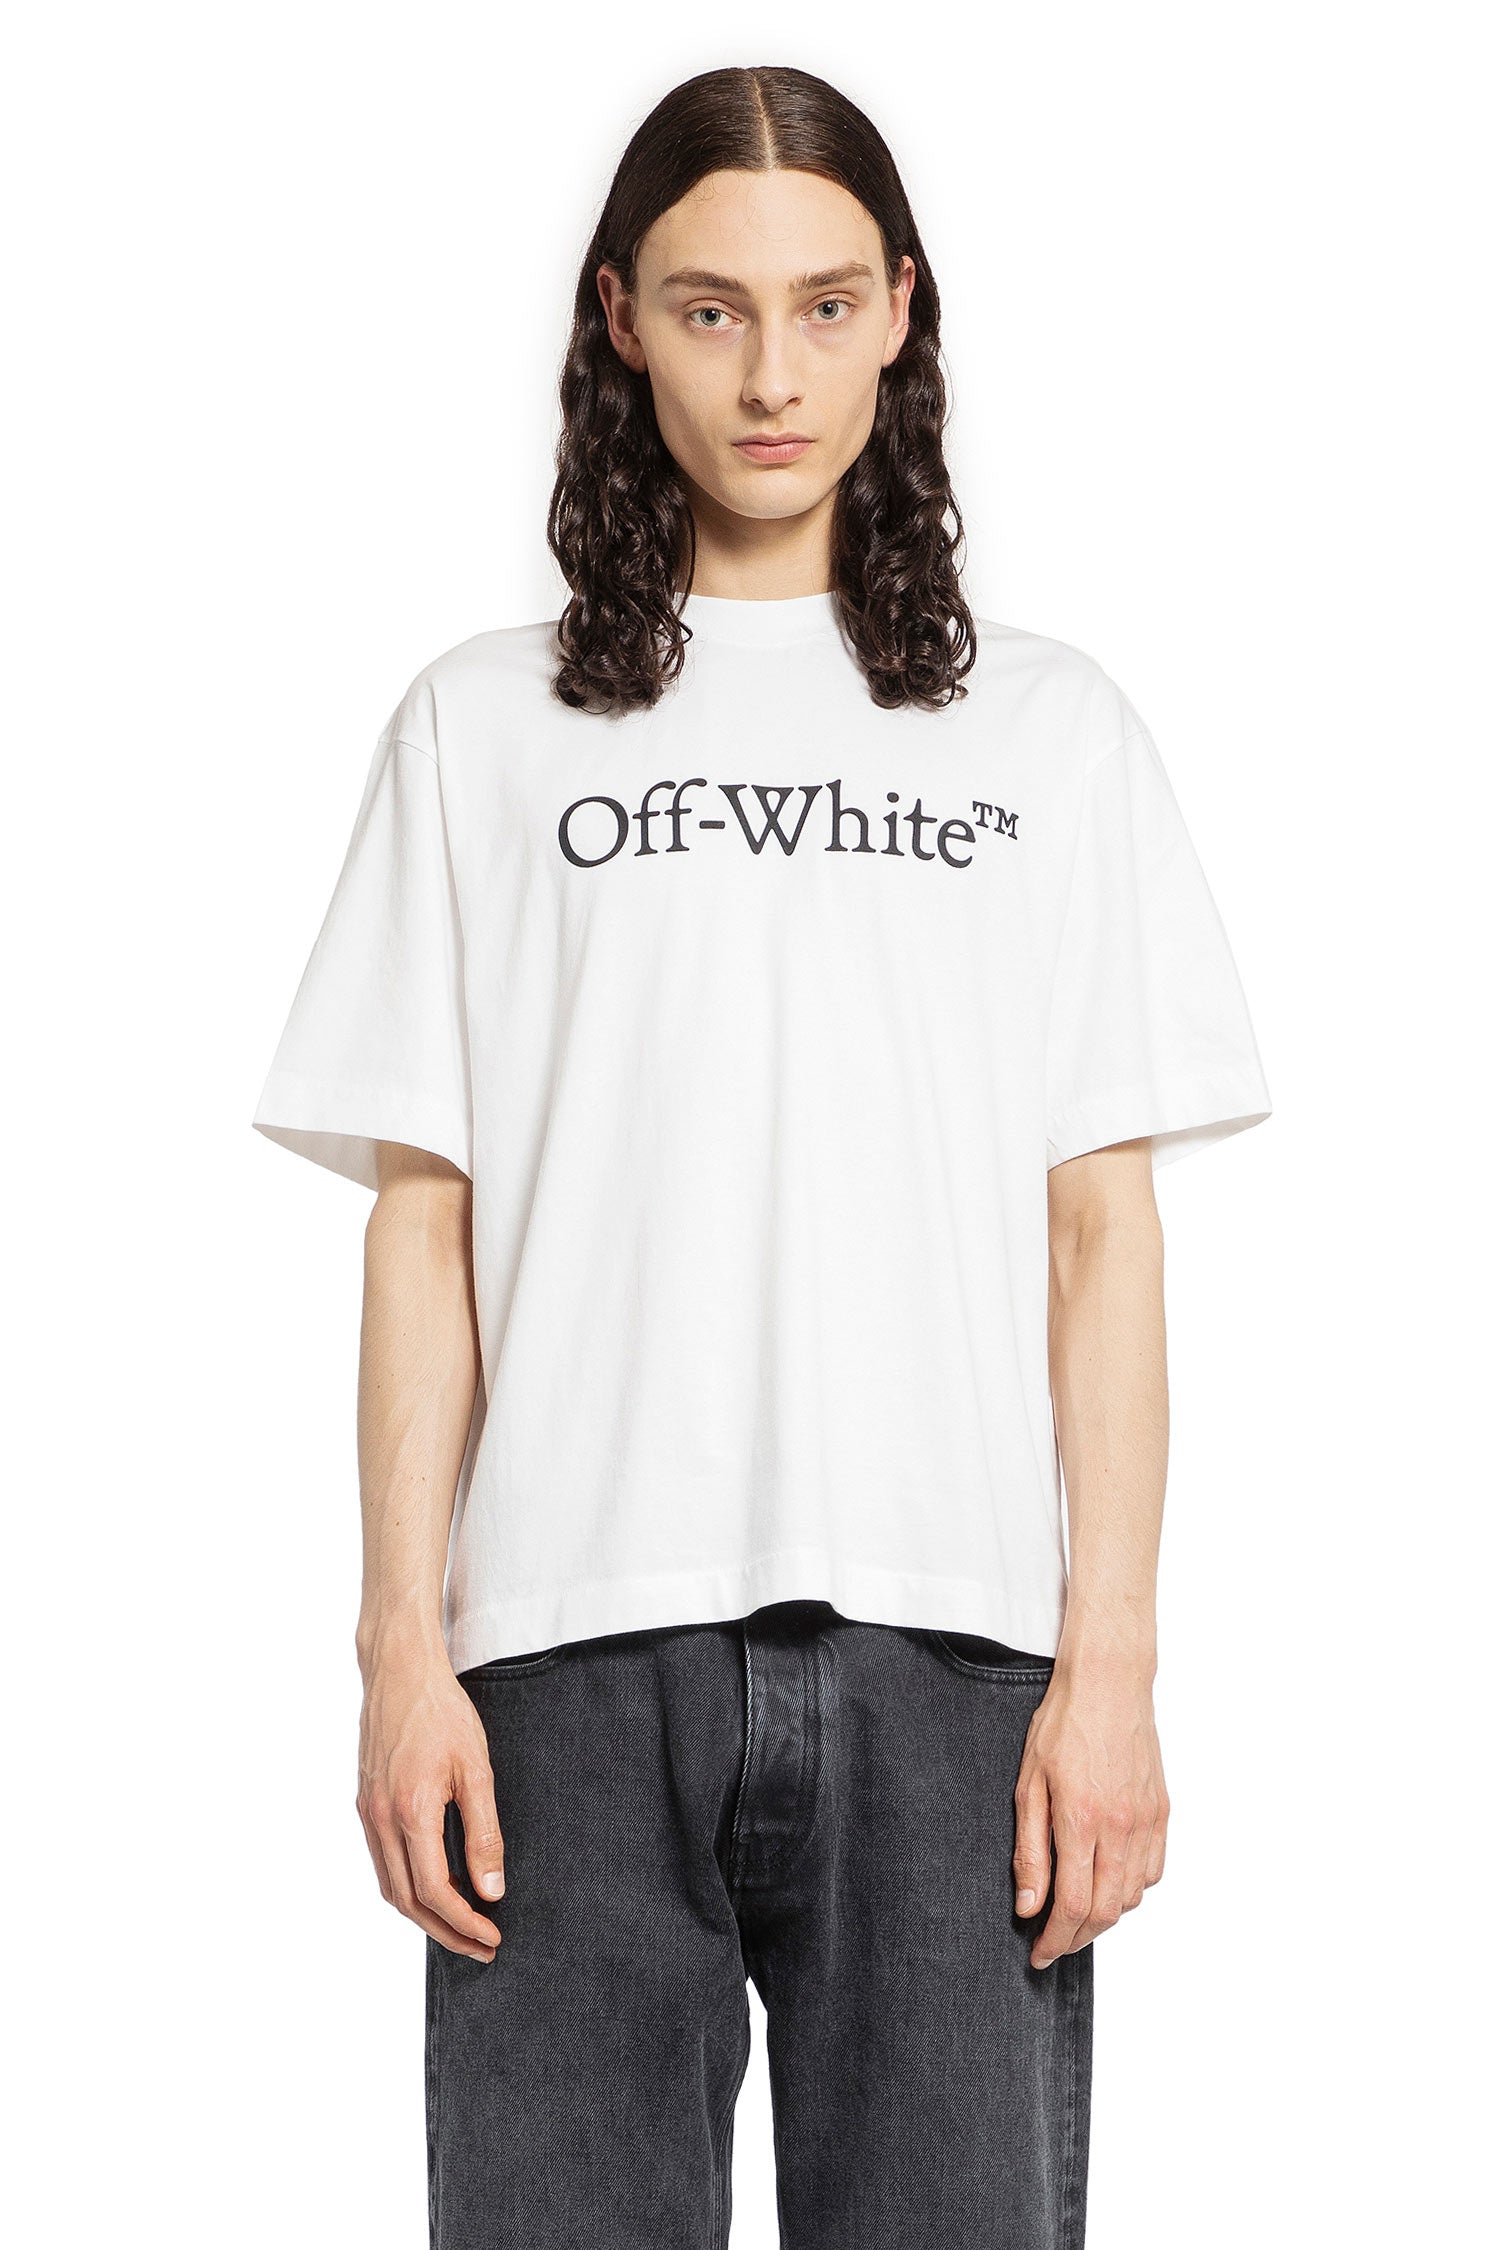 OFF-WHITE MAN WHITE T-SHIRTS